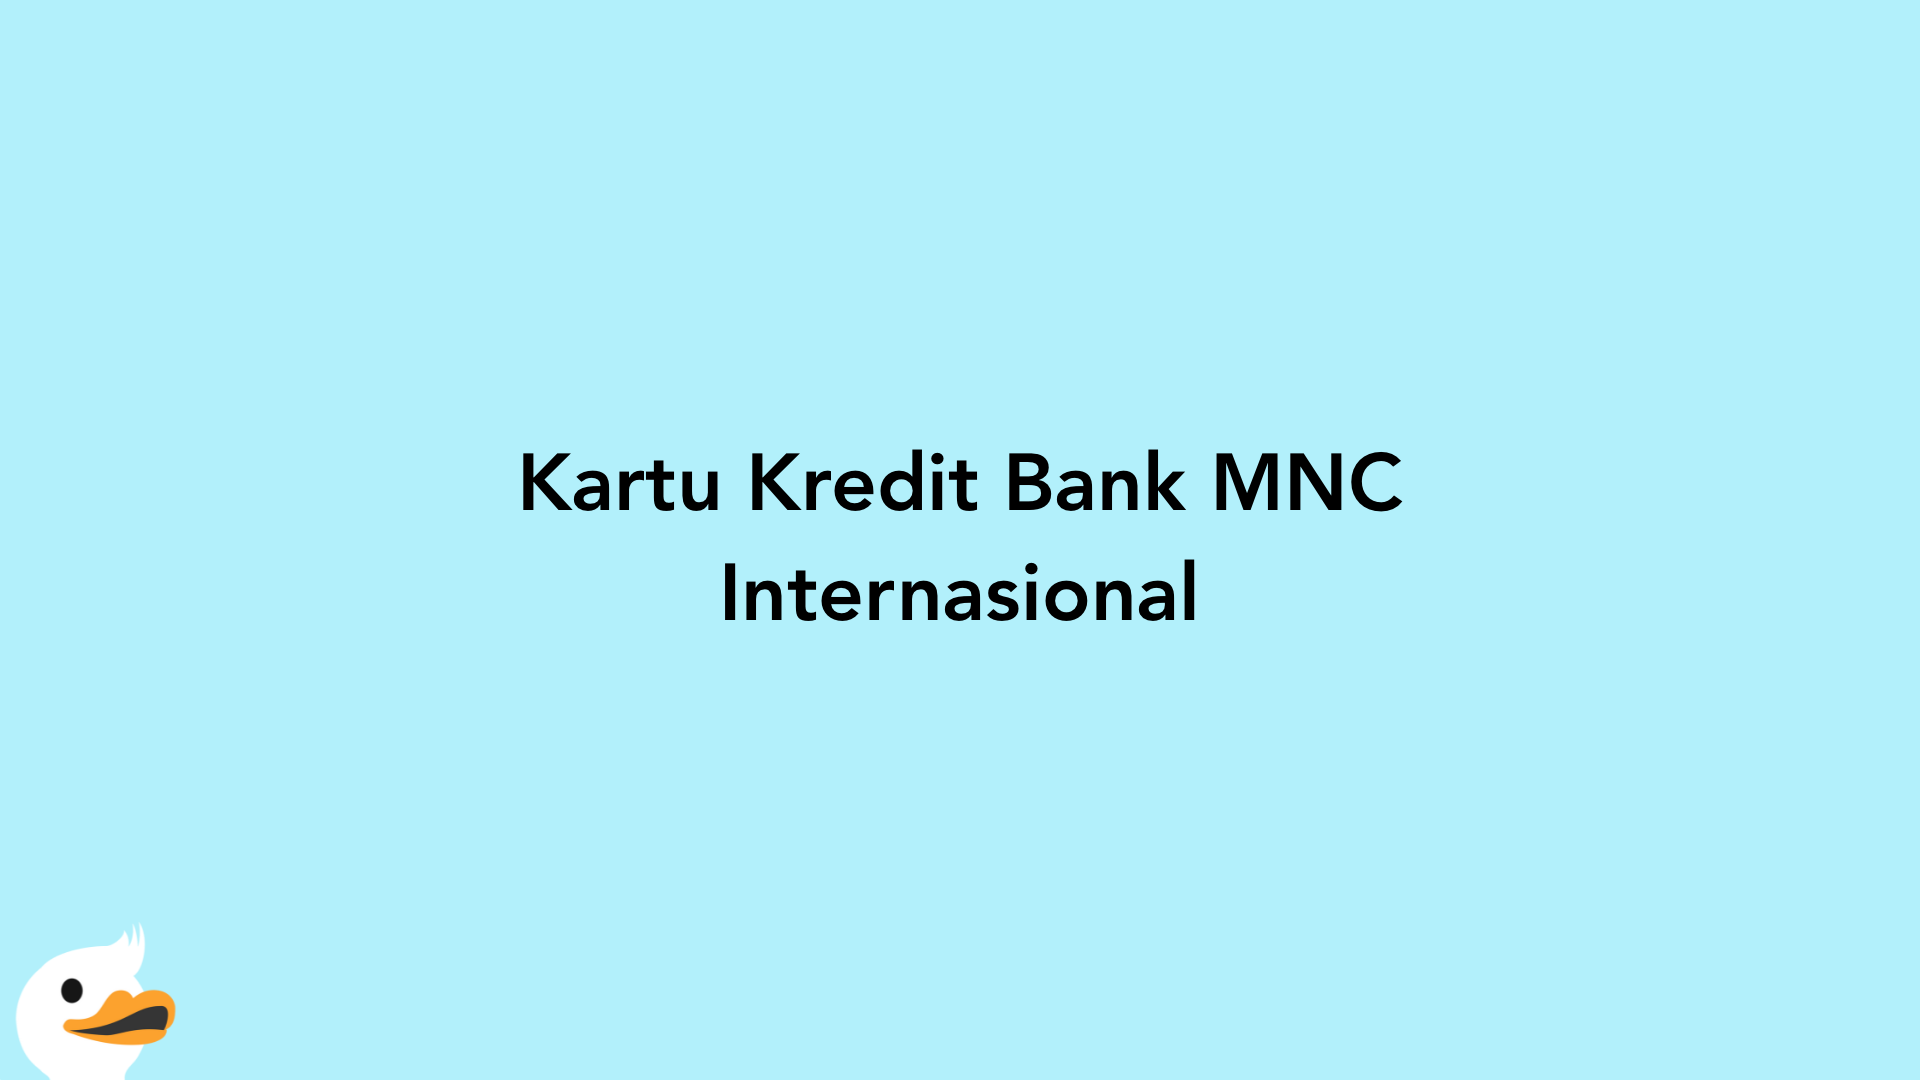 Kartu Kredit Bank MNC Internasional